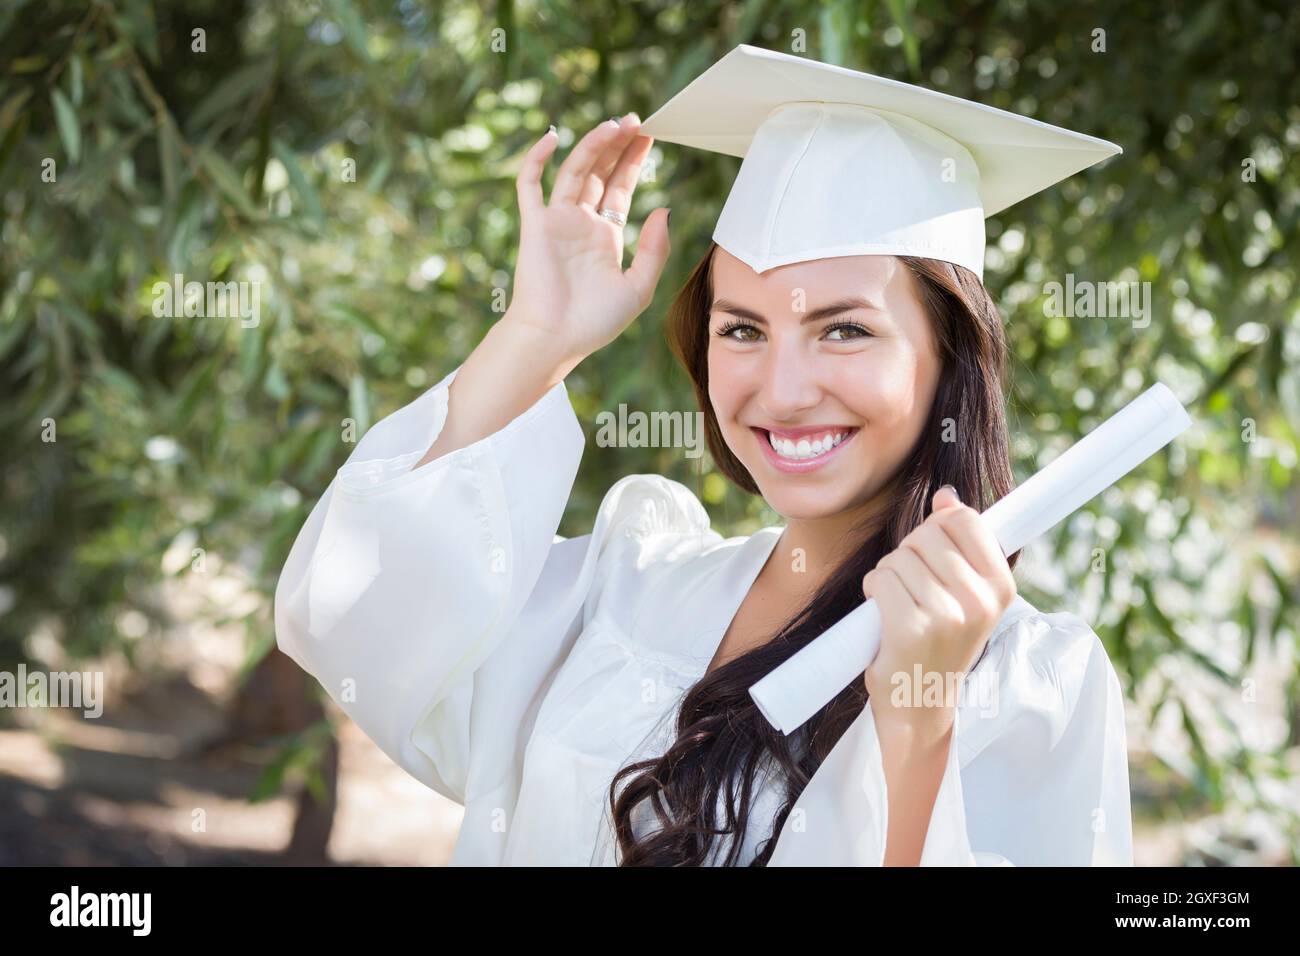 Atractiva Chica De Raza Mixta Celebra La Graduación Fuera De Toga Y Birrete Con Diploma En Mano 7518